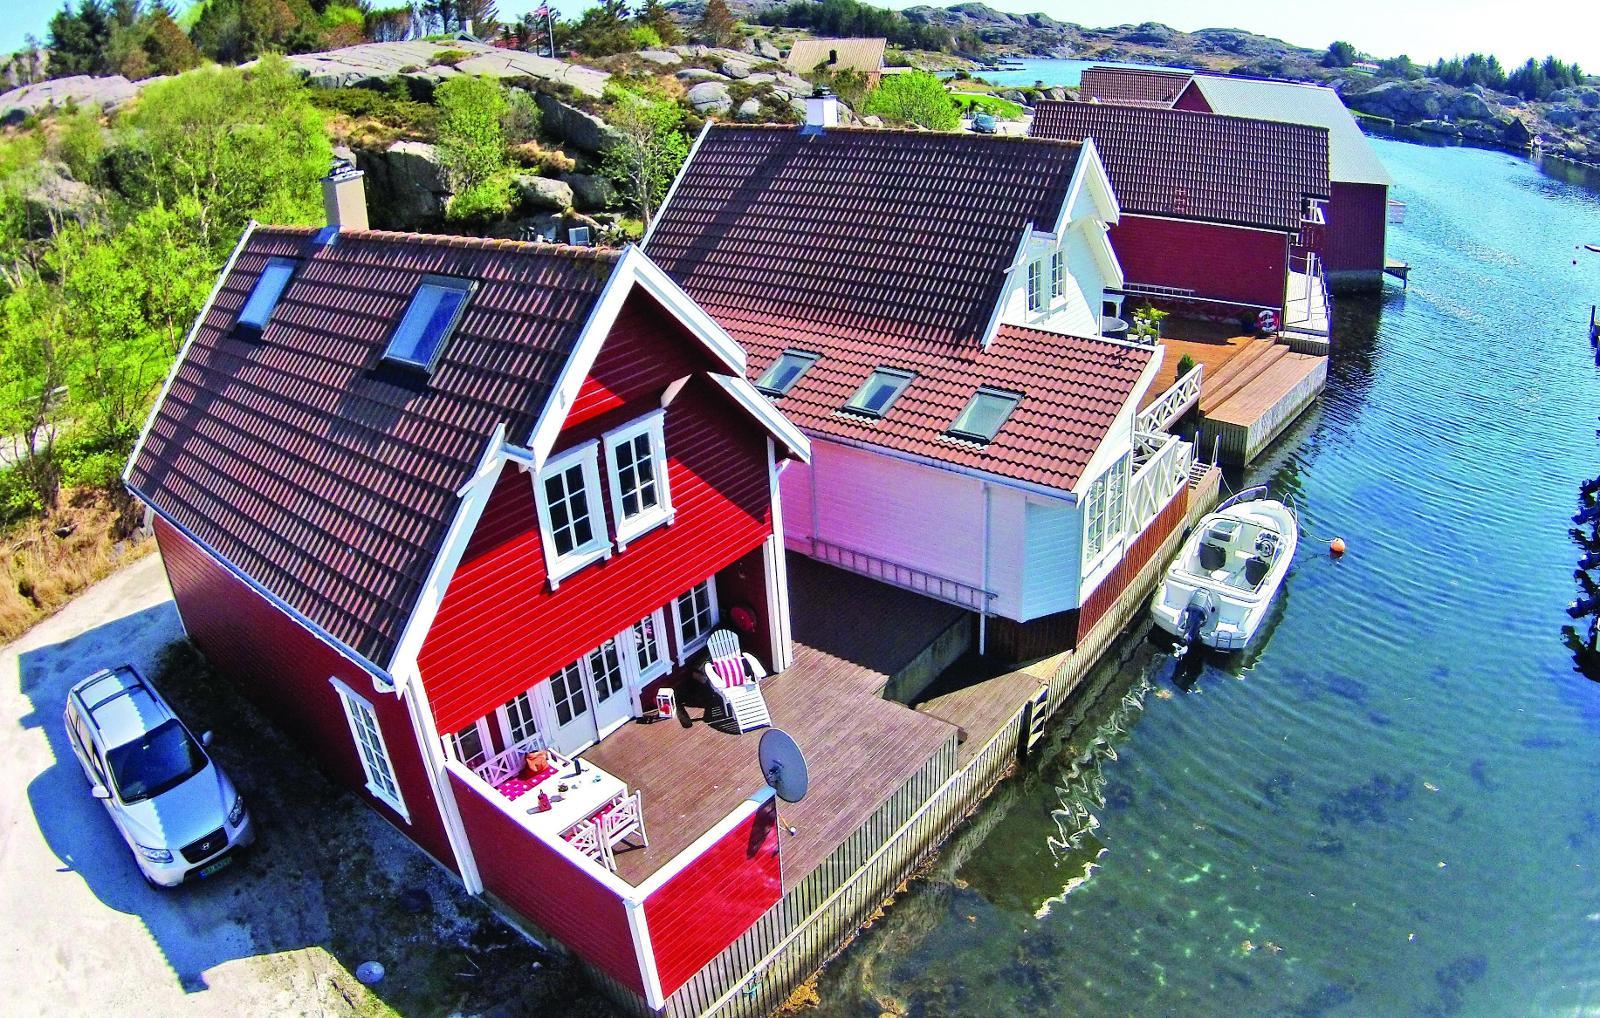 ROGALAND: Trestjernes feriehus på Eigerøy i Rogaland koster 8210 kroner i juli hos Novasol.